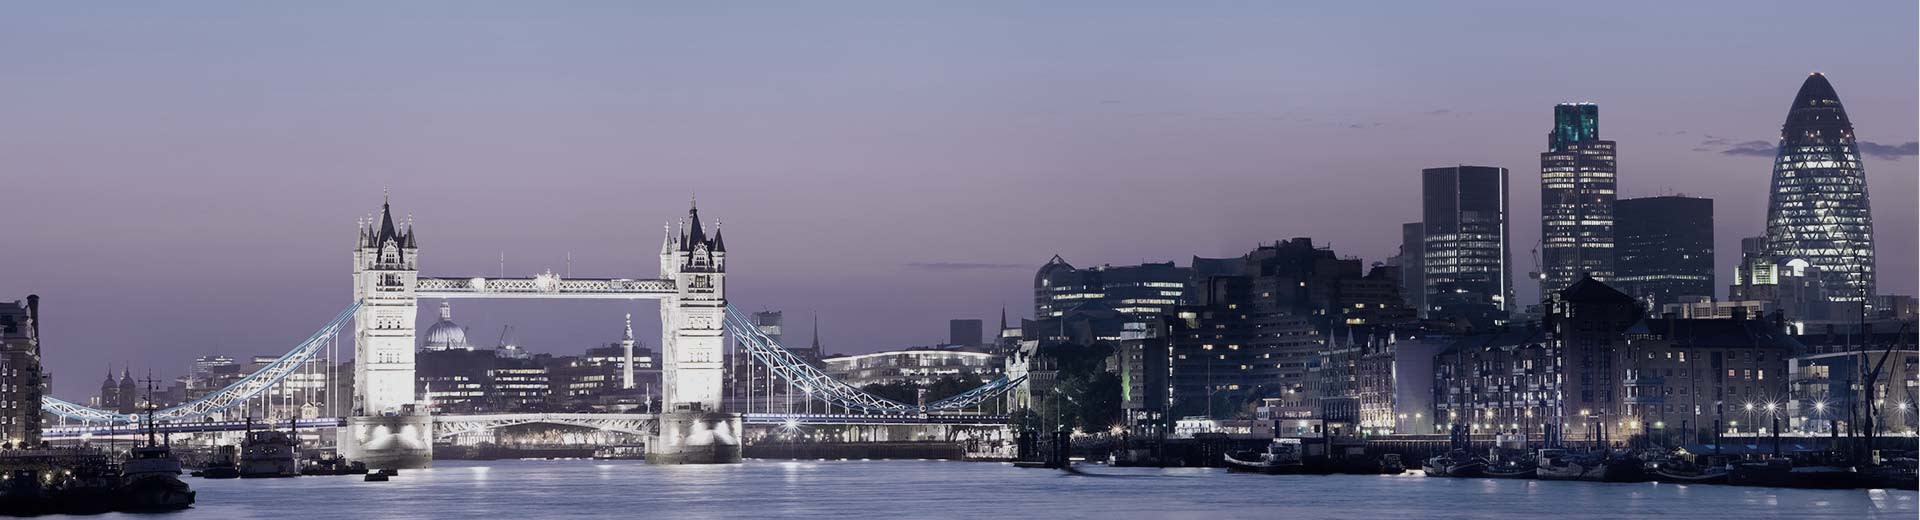 夜幕下的伦敦桥横跨泰晤士河，照亮了整个天空。